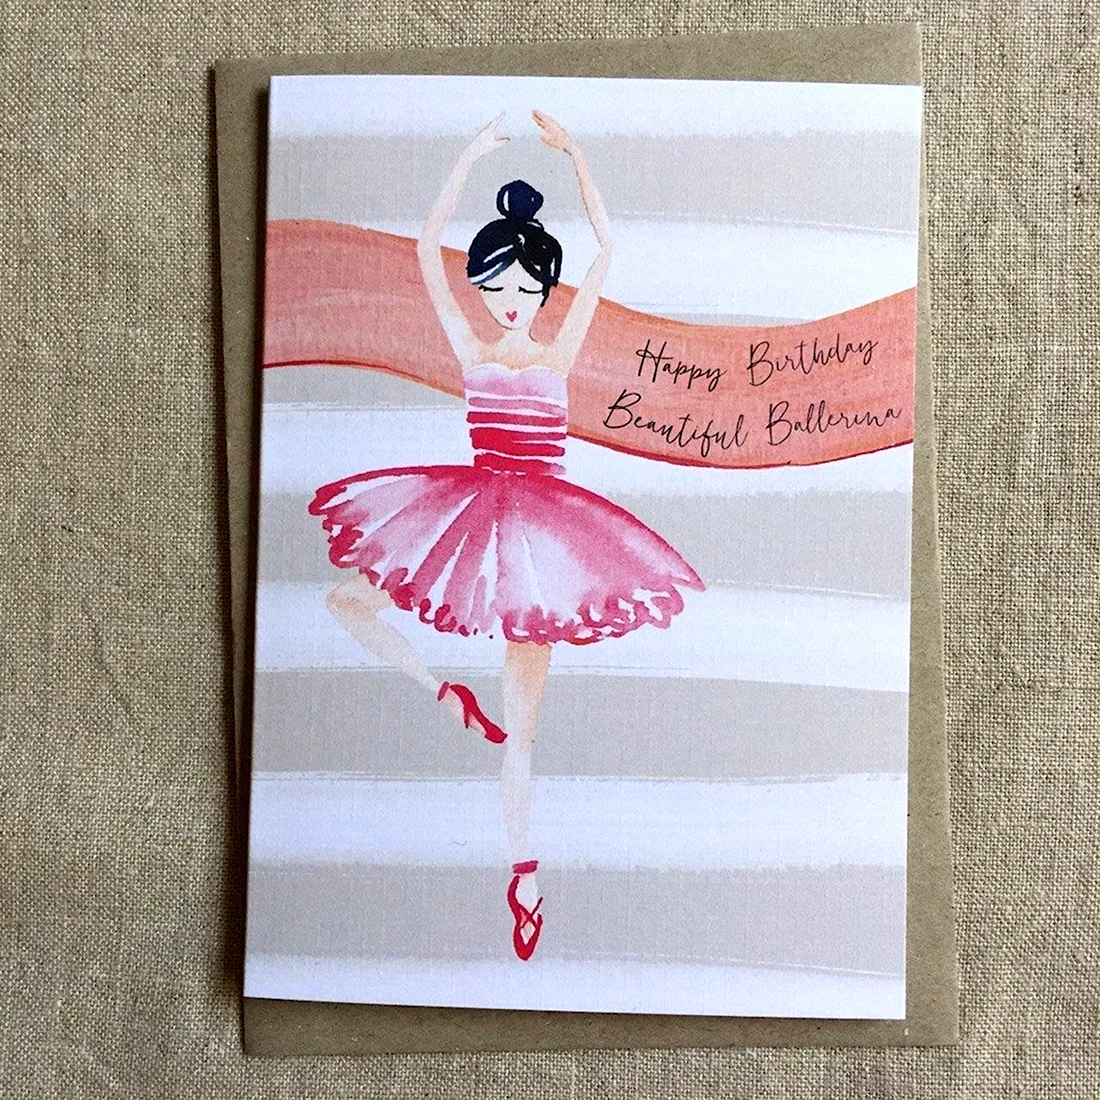 Открытка с днем рождения танцовщице открытка